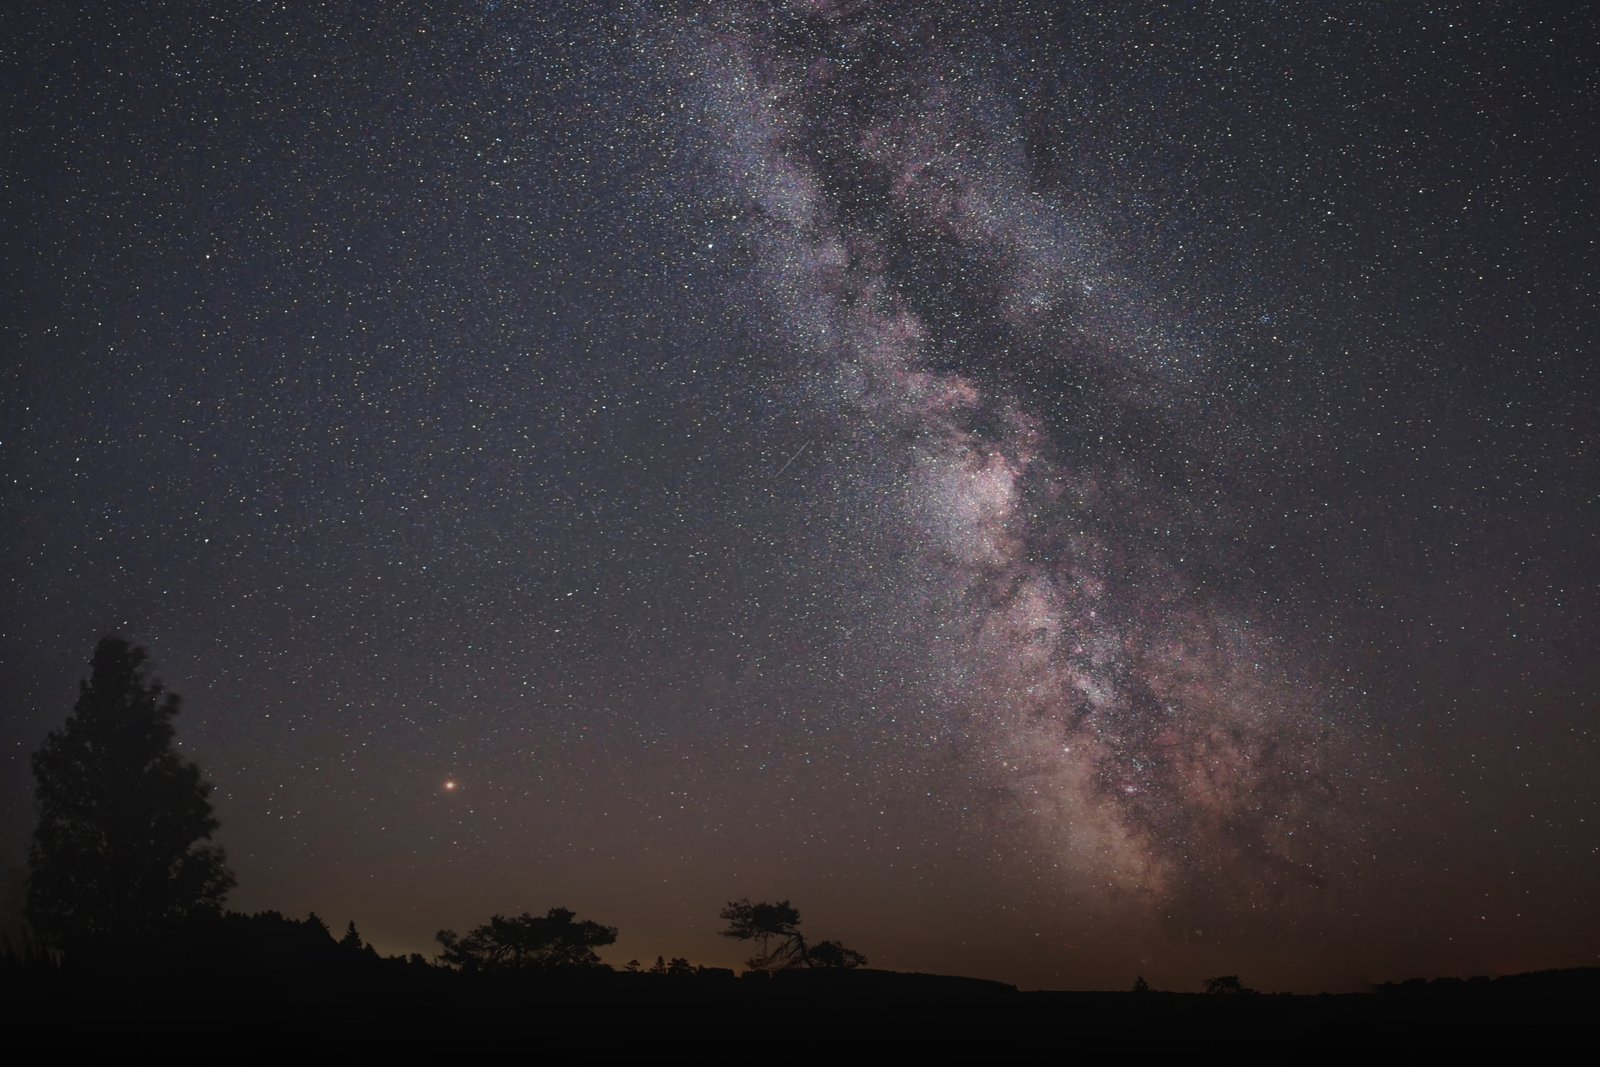 composição do céu estrelado com a sombra das árvores a partir de uma técnica de astrofotografia 